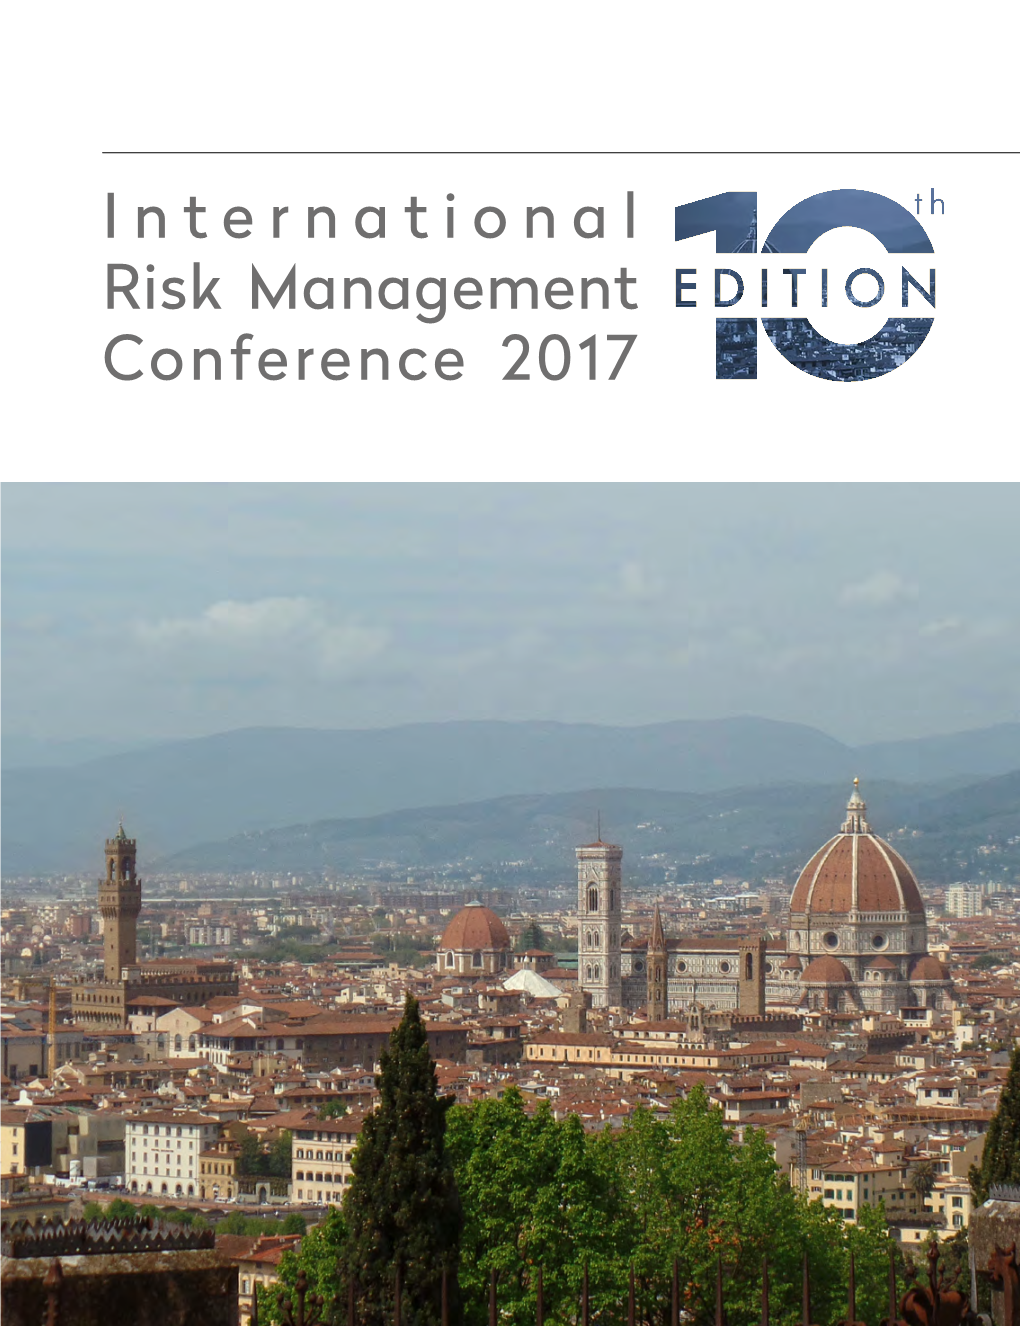 International Risk Management Conference 2017